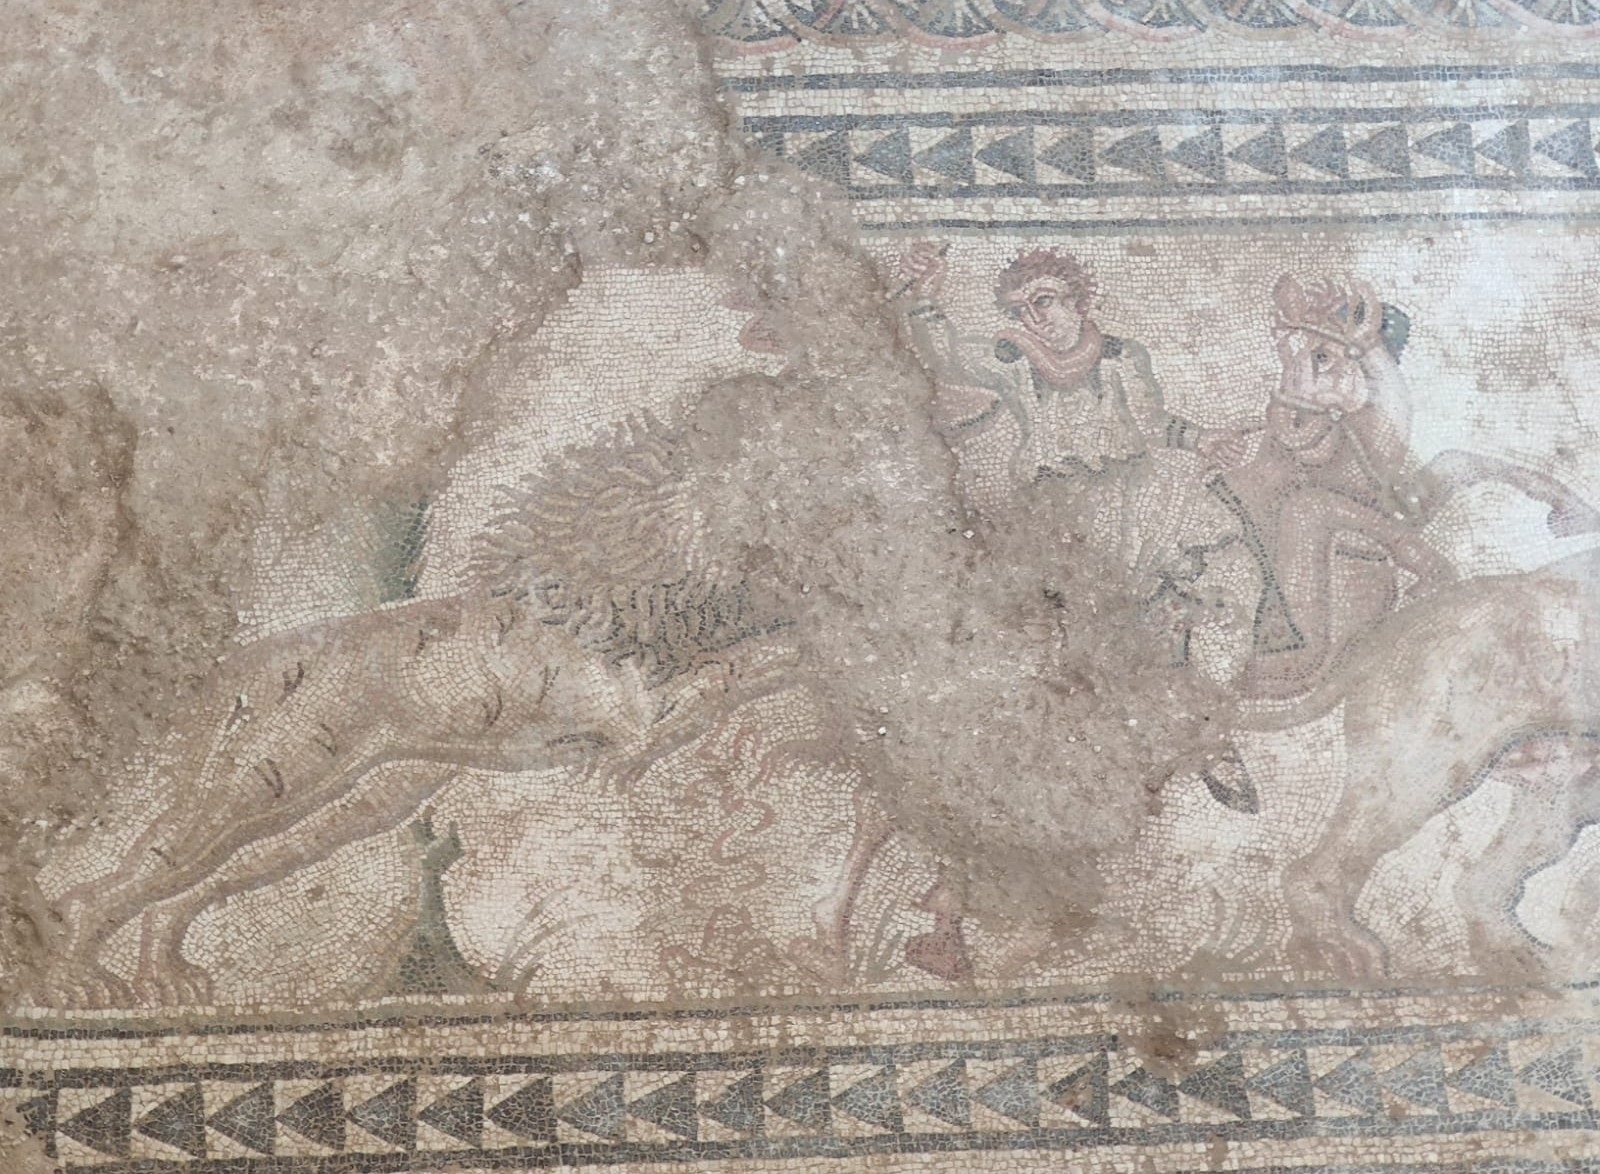 Aparecen la figura de otro aristócrata en el mosaico de caza de Salar y restos de la Villa del siglo I